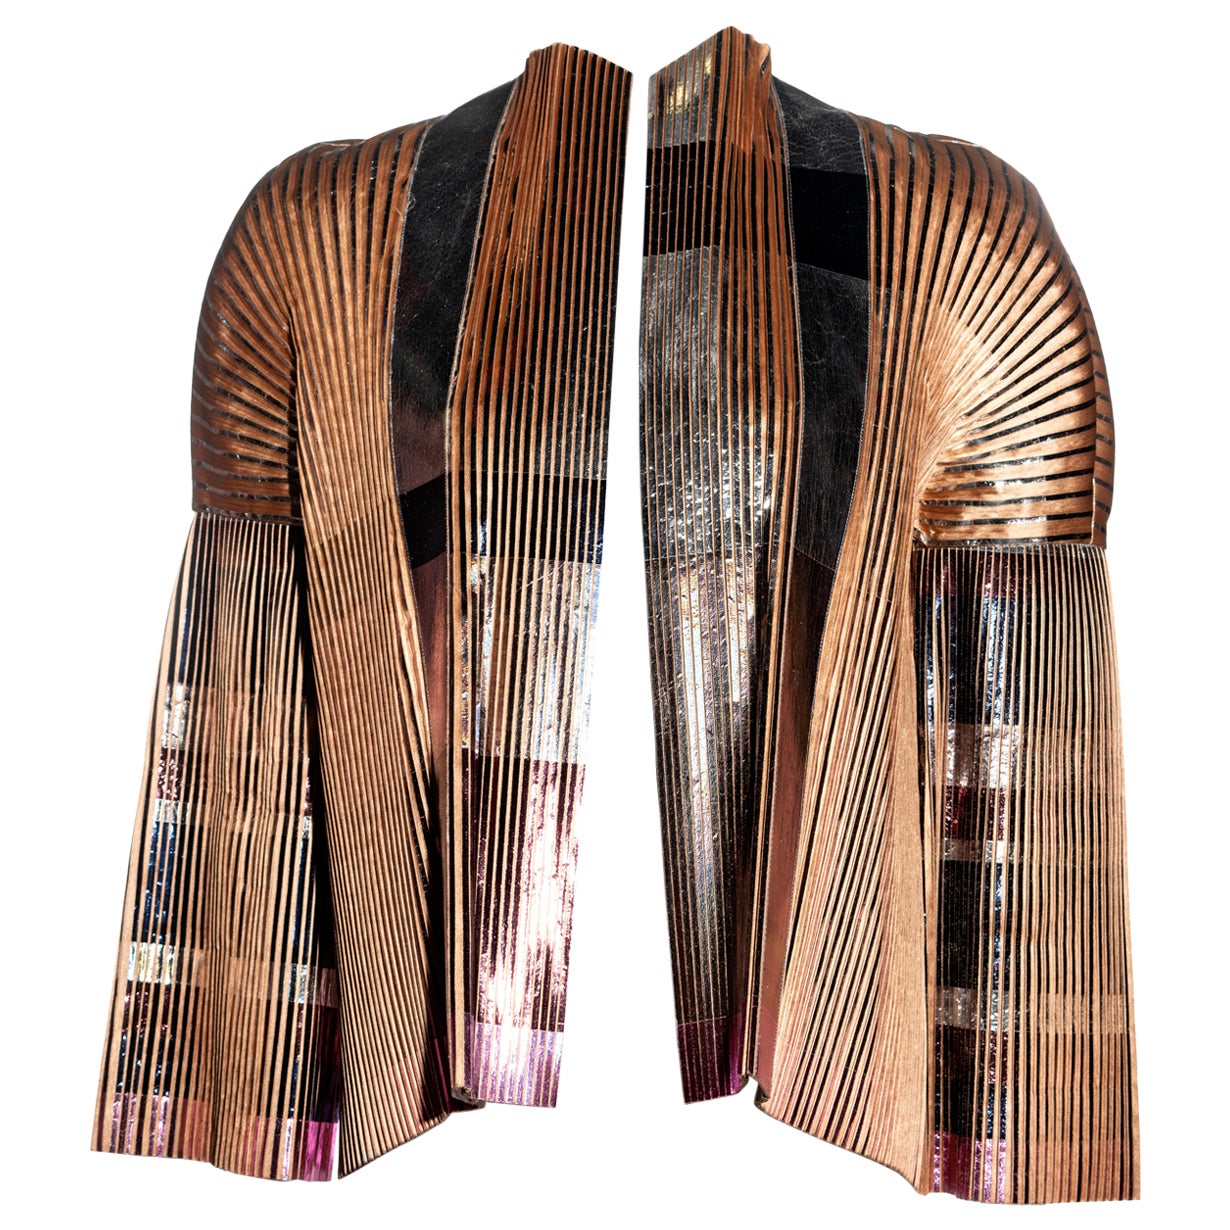 Veste plissée en soie métallisée Balenciaga by Nicolas Ghesquière, printemps-été 2009 